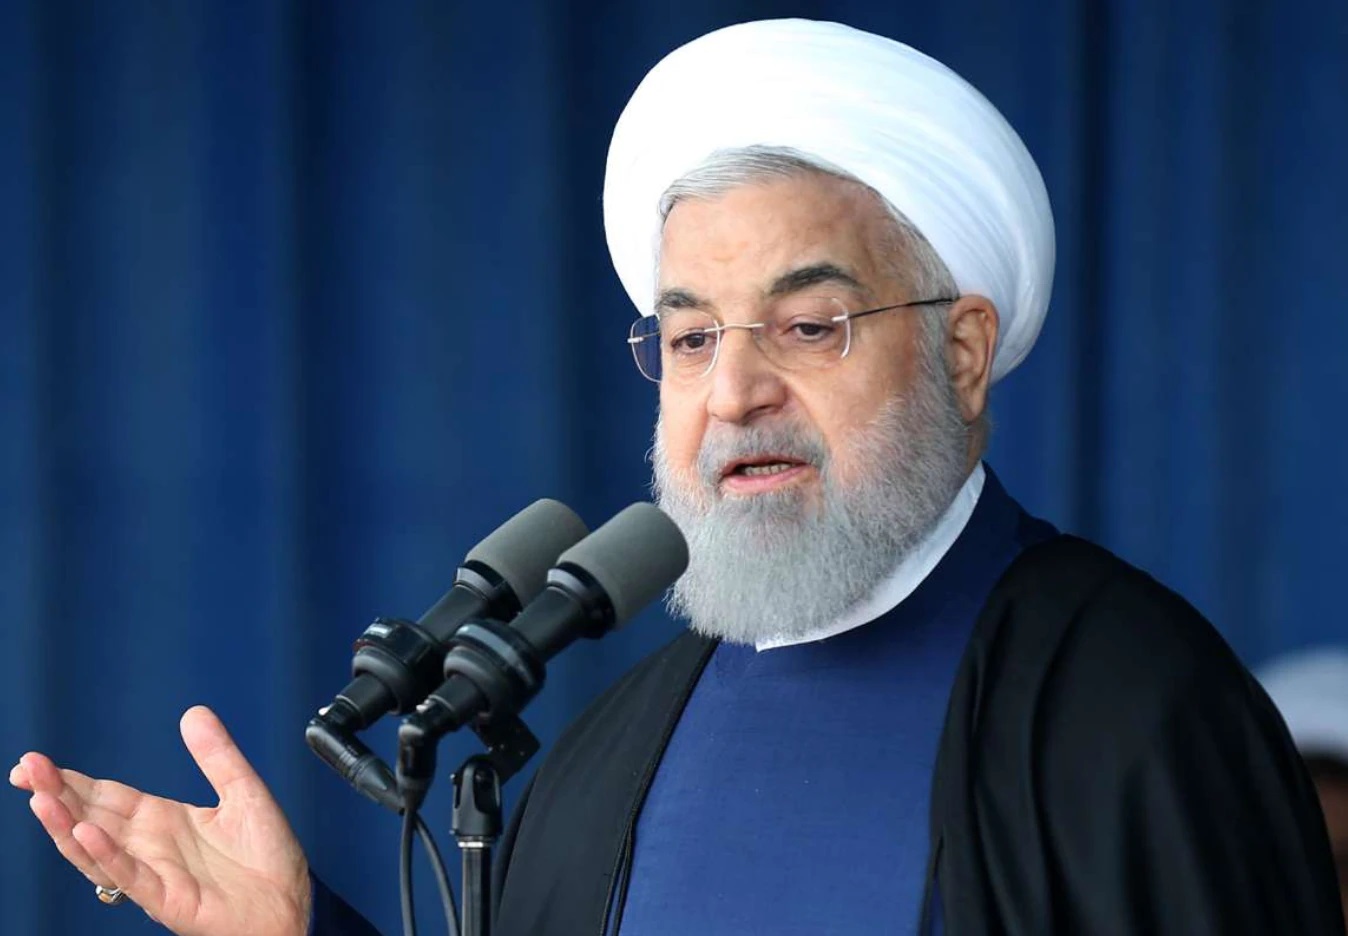 روحانی: جفاست اگر با سیاه‌نمایی حماسه افزایش تولید کشور در هنگامه فشار حداکثری بدلیل ملاحظات سیاسی و جناحی نادیده گرفته شود